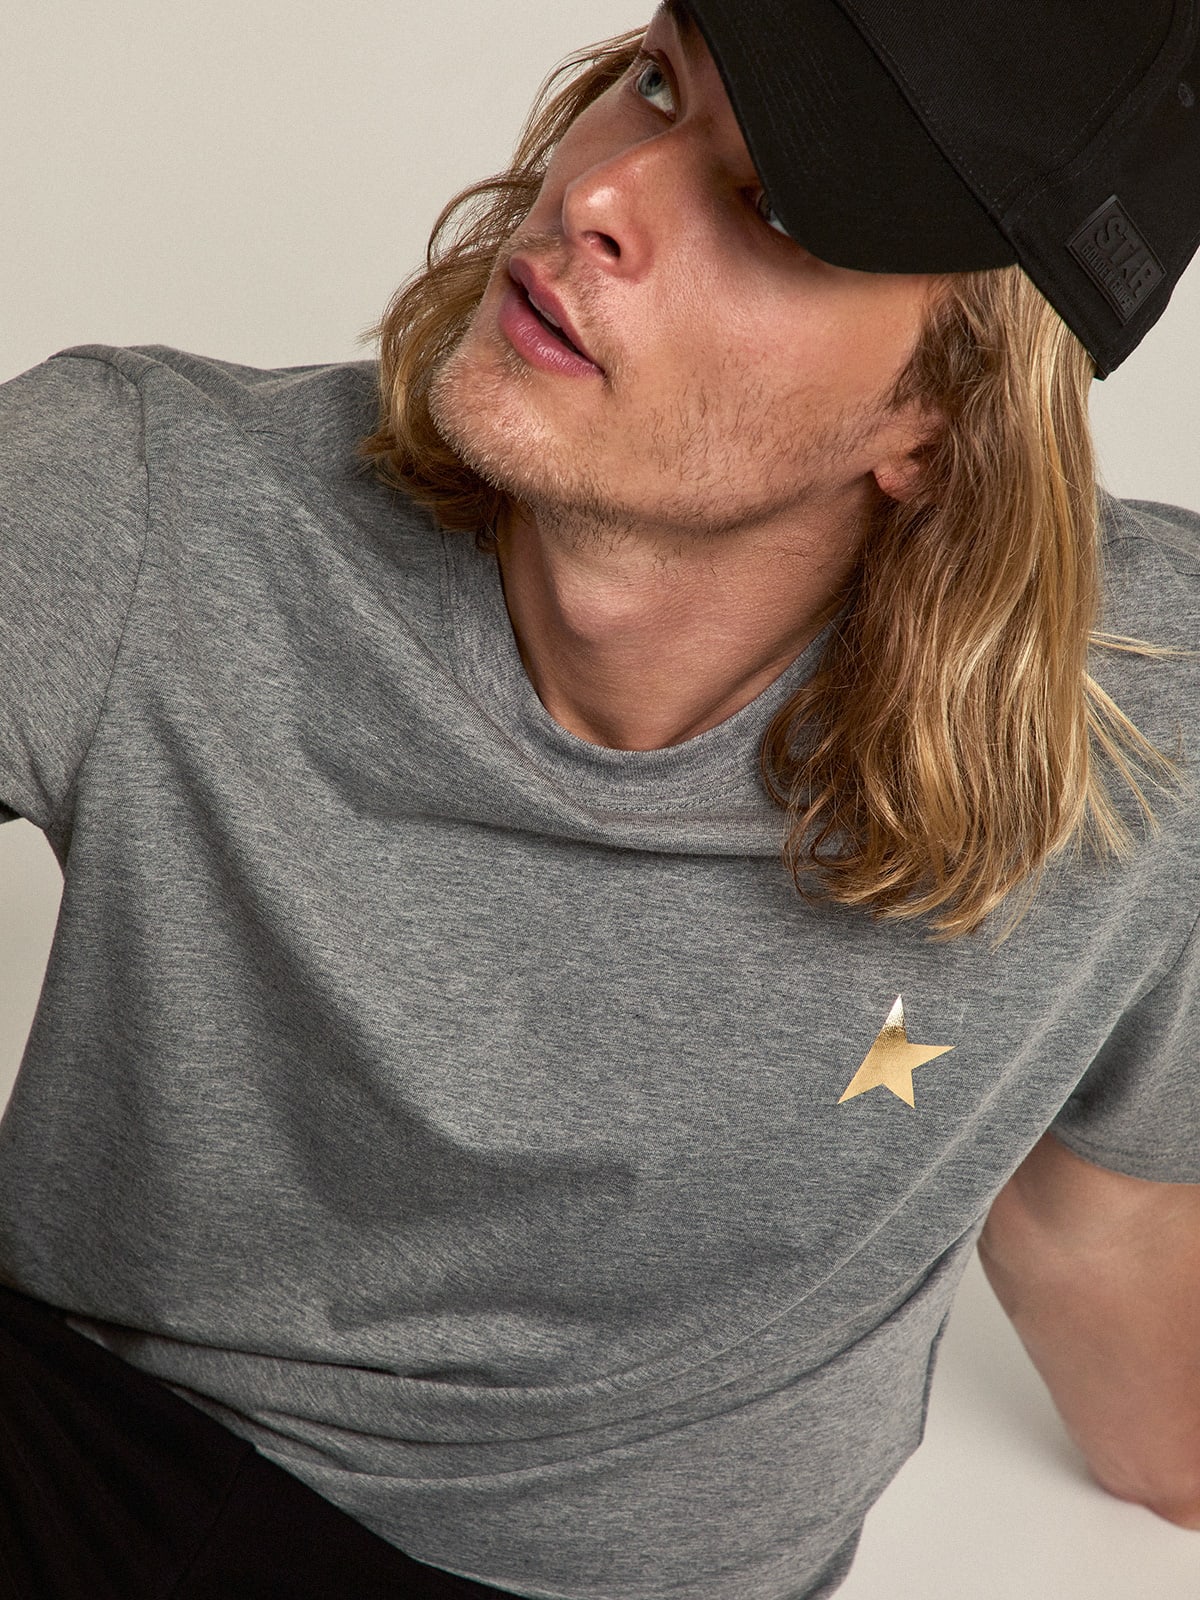 Golden Goose - T-shirt Collezione Star di colore grigio mélange con stella color oro a contrasto sul davanti in 